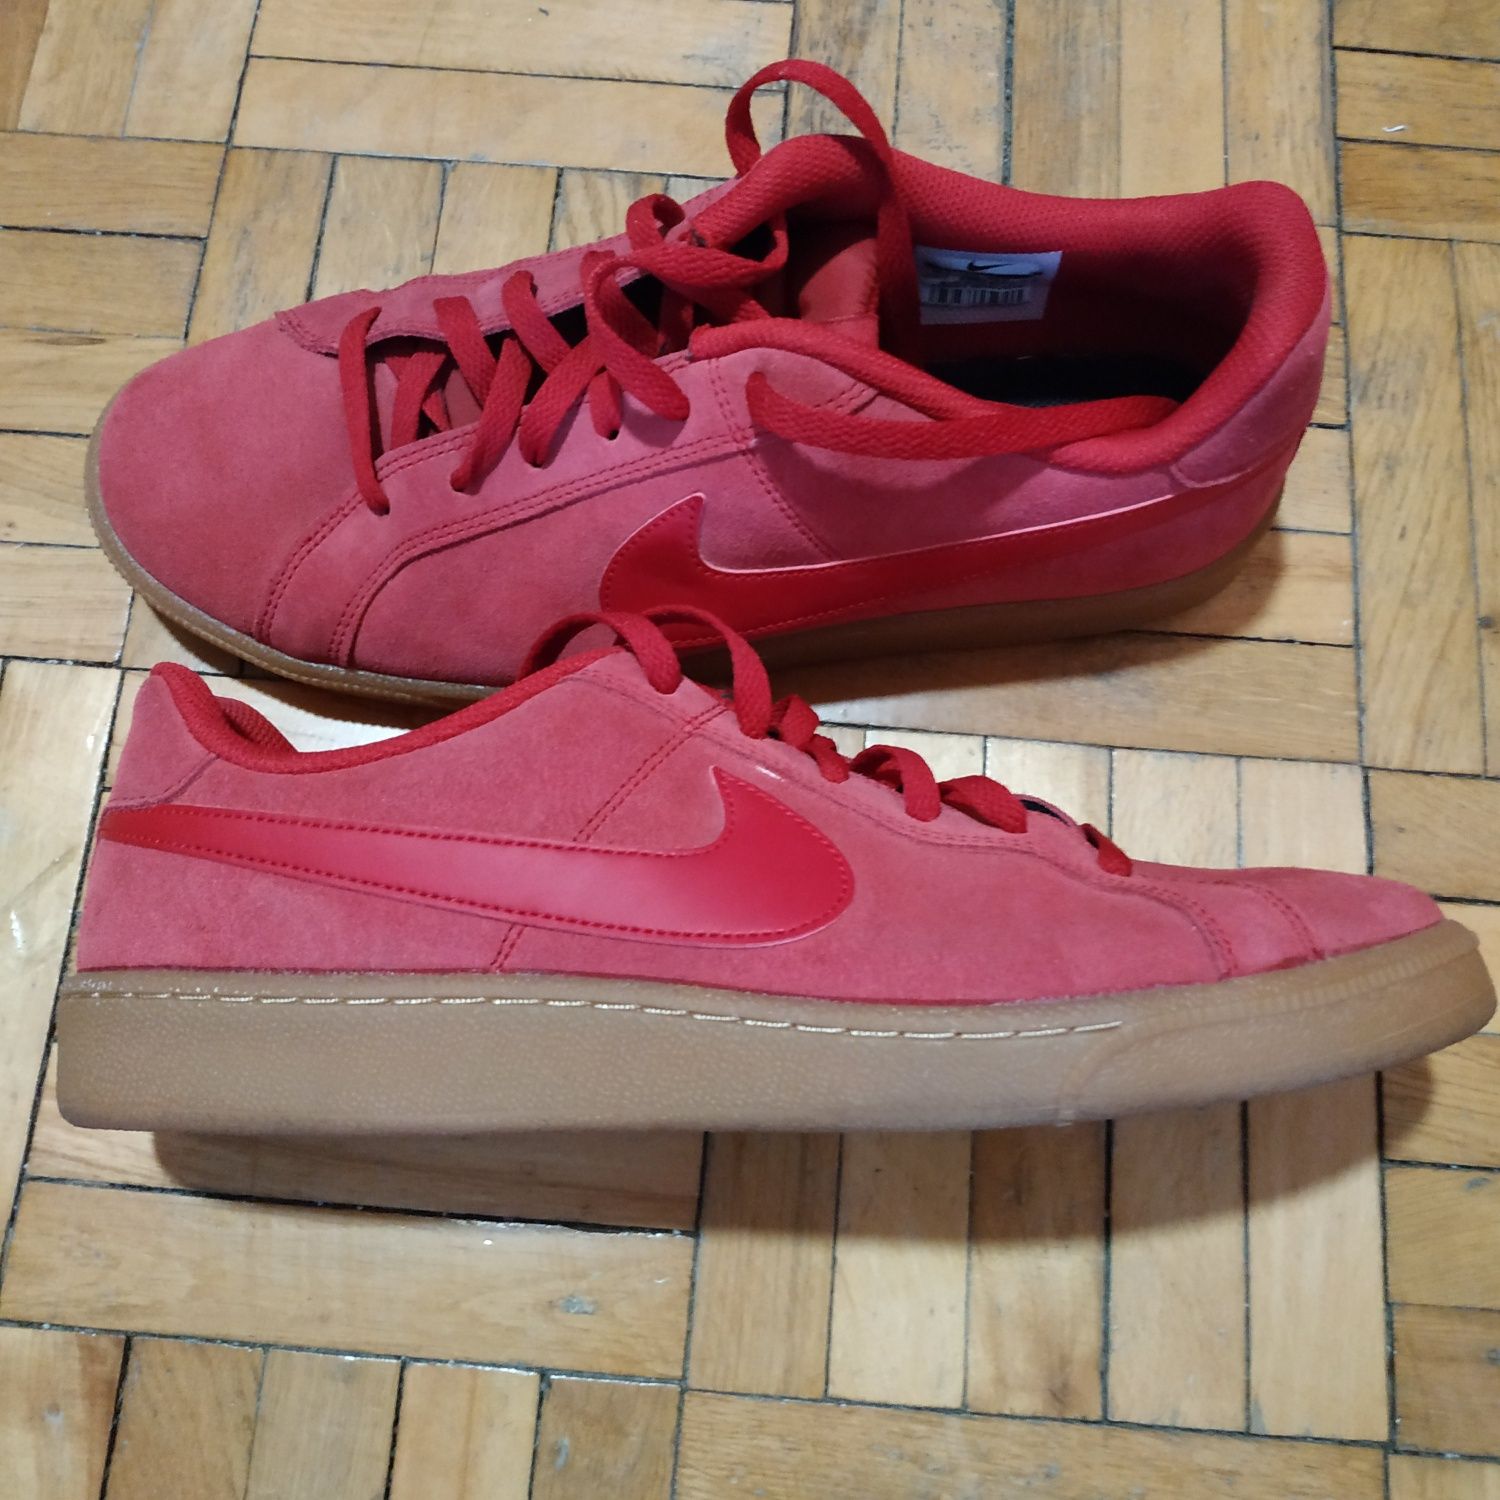 Buty czerwone Nike męskie 44,5